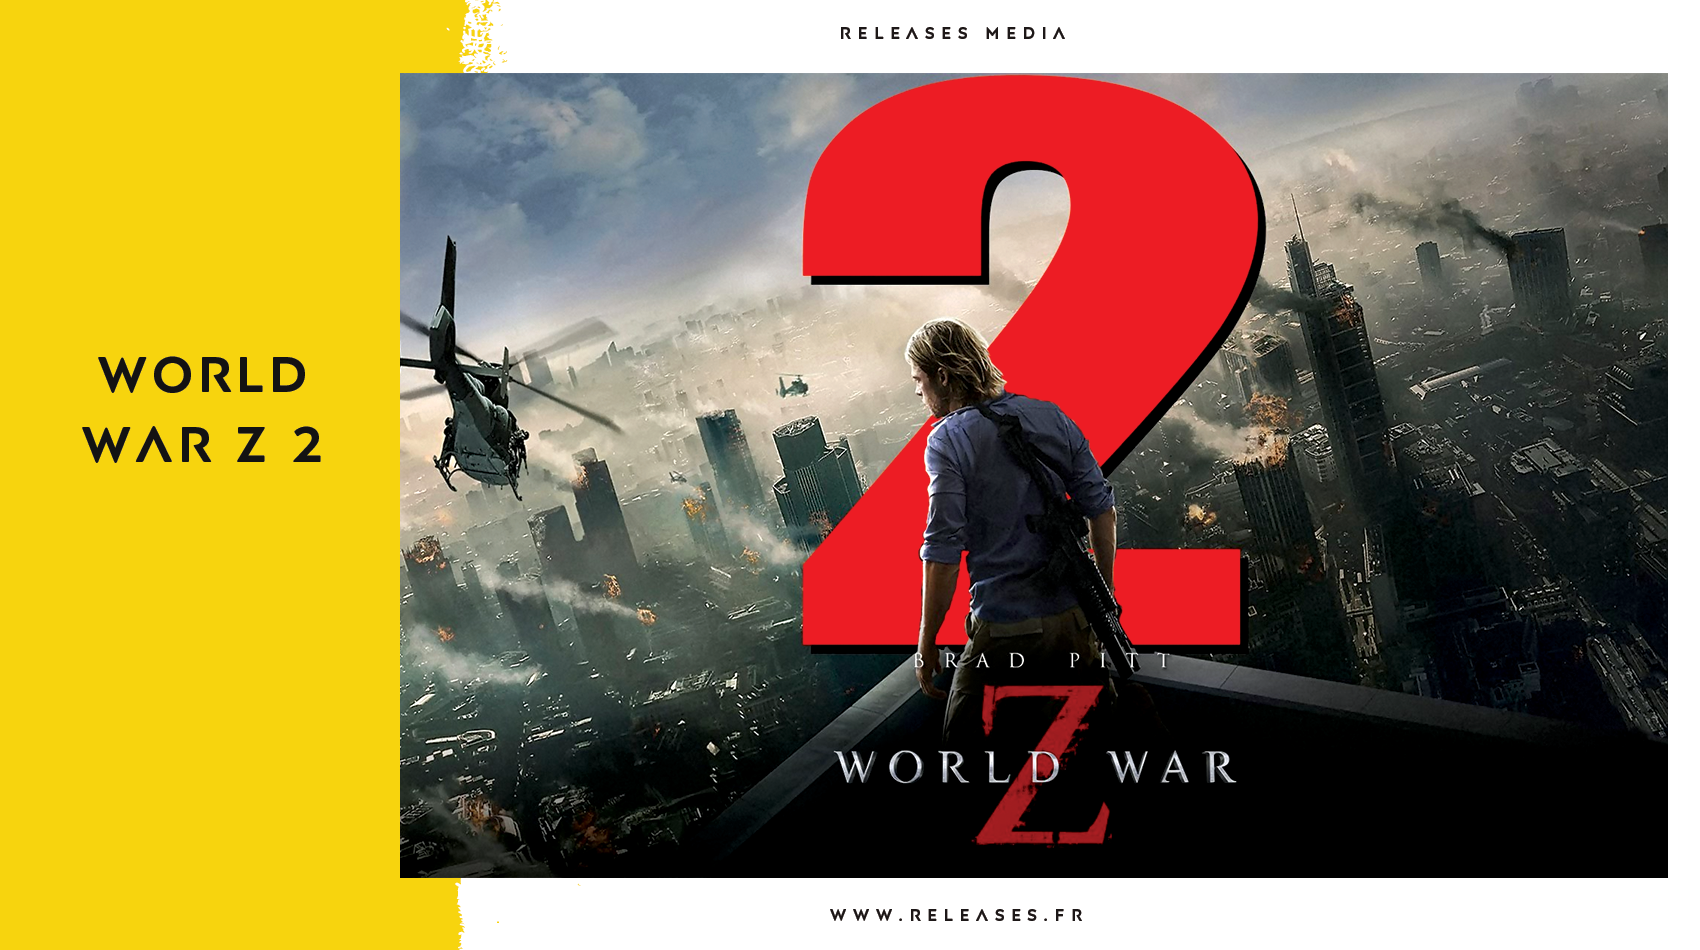 World War Z 2 (An Update on the Canceled Sequel) - BuddyTV